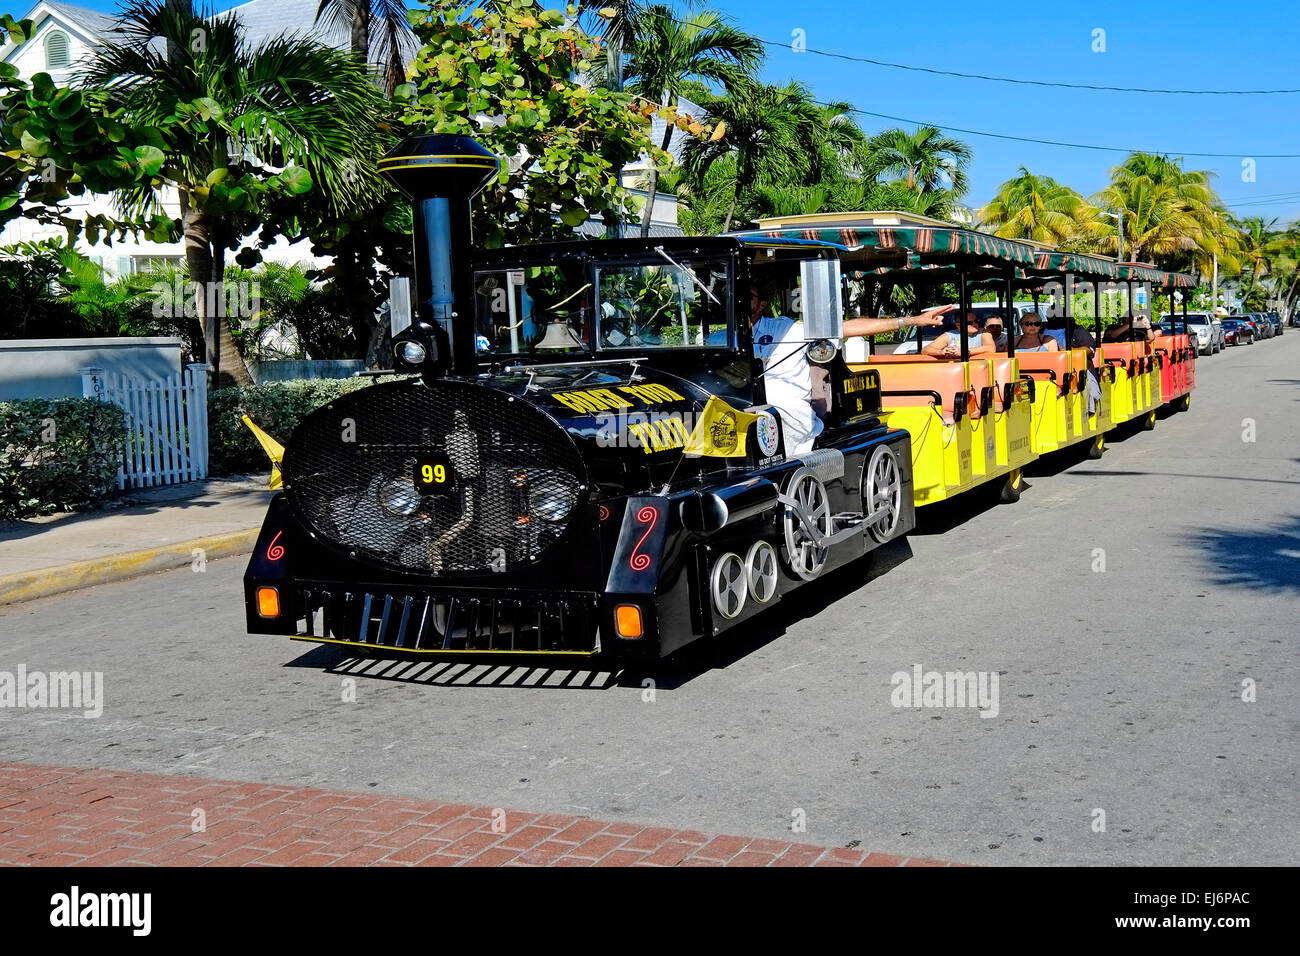 Train Conch Key West FL Floride destination pour l'ouest de Tampa Crusie Caraïbes Banque D'Images